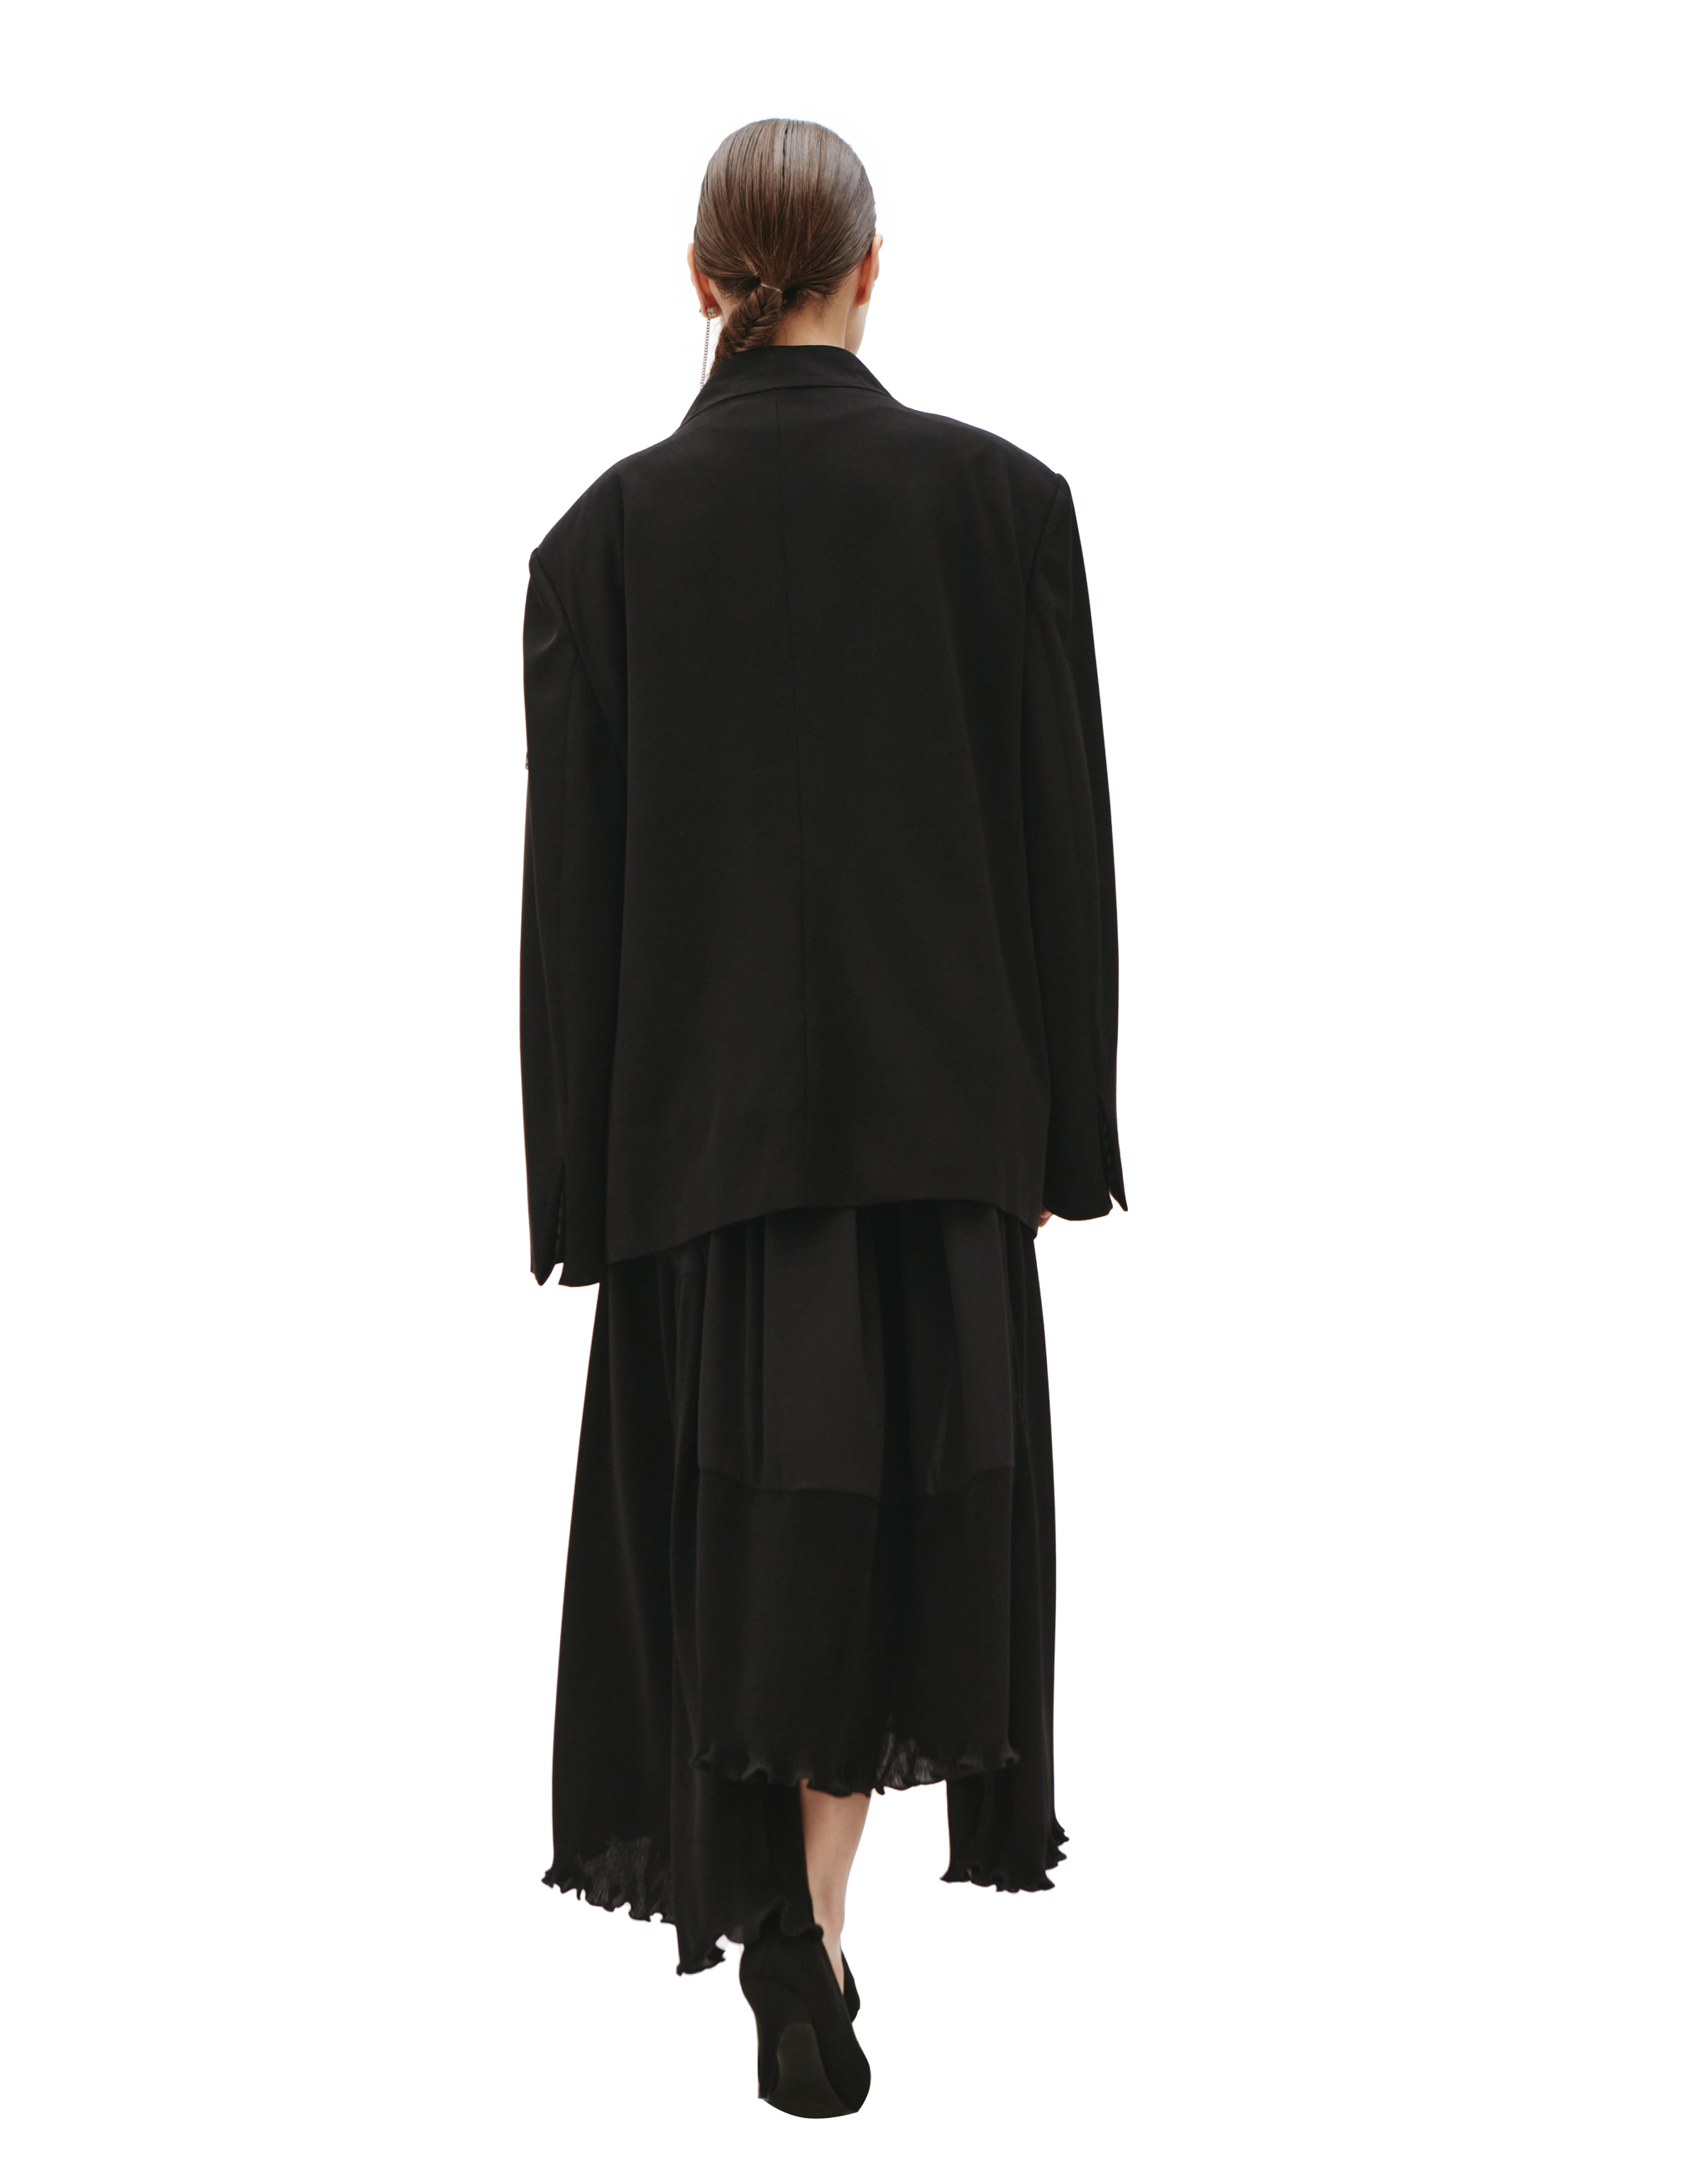 Оверсайз пиджак с патчем Balenciaga 683346/TLT02/1000, размер 40;38;36 683346/TLT02/1000 - фото 4